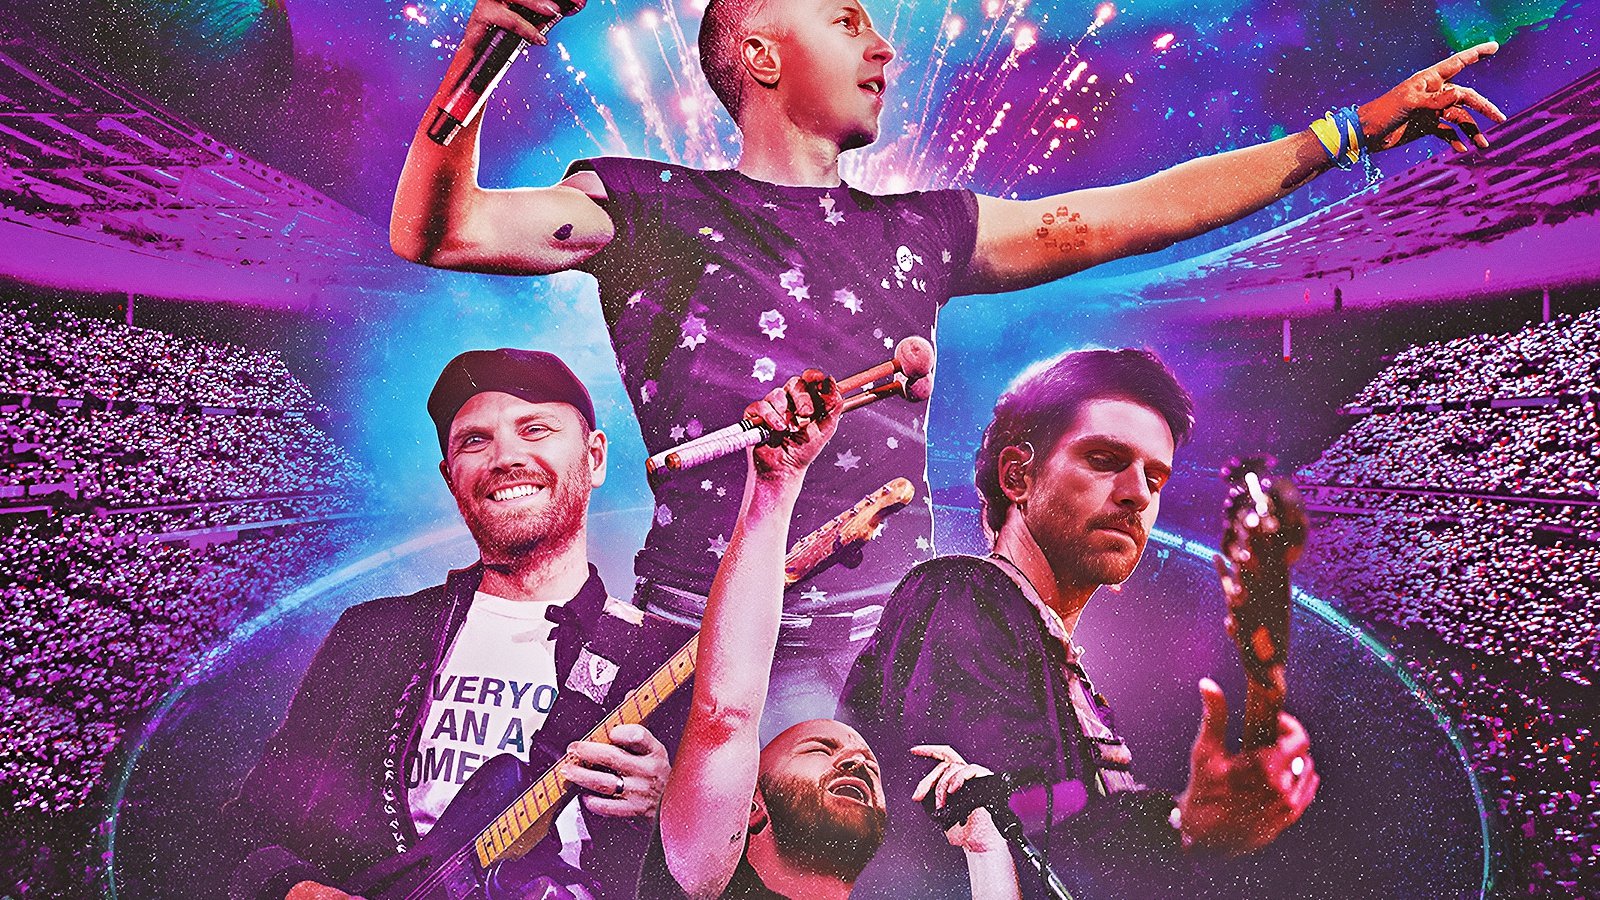 Coldplay - Music Of The Spheres: Live at River Plate, la recensione: la musica al cinema